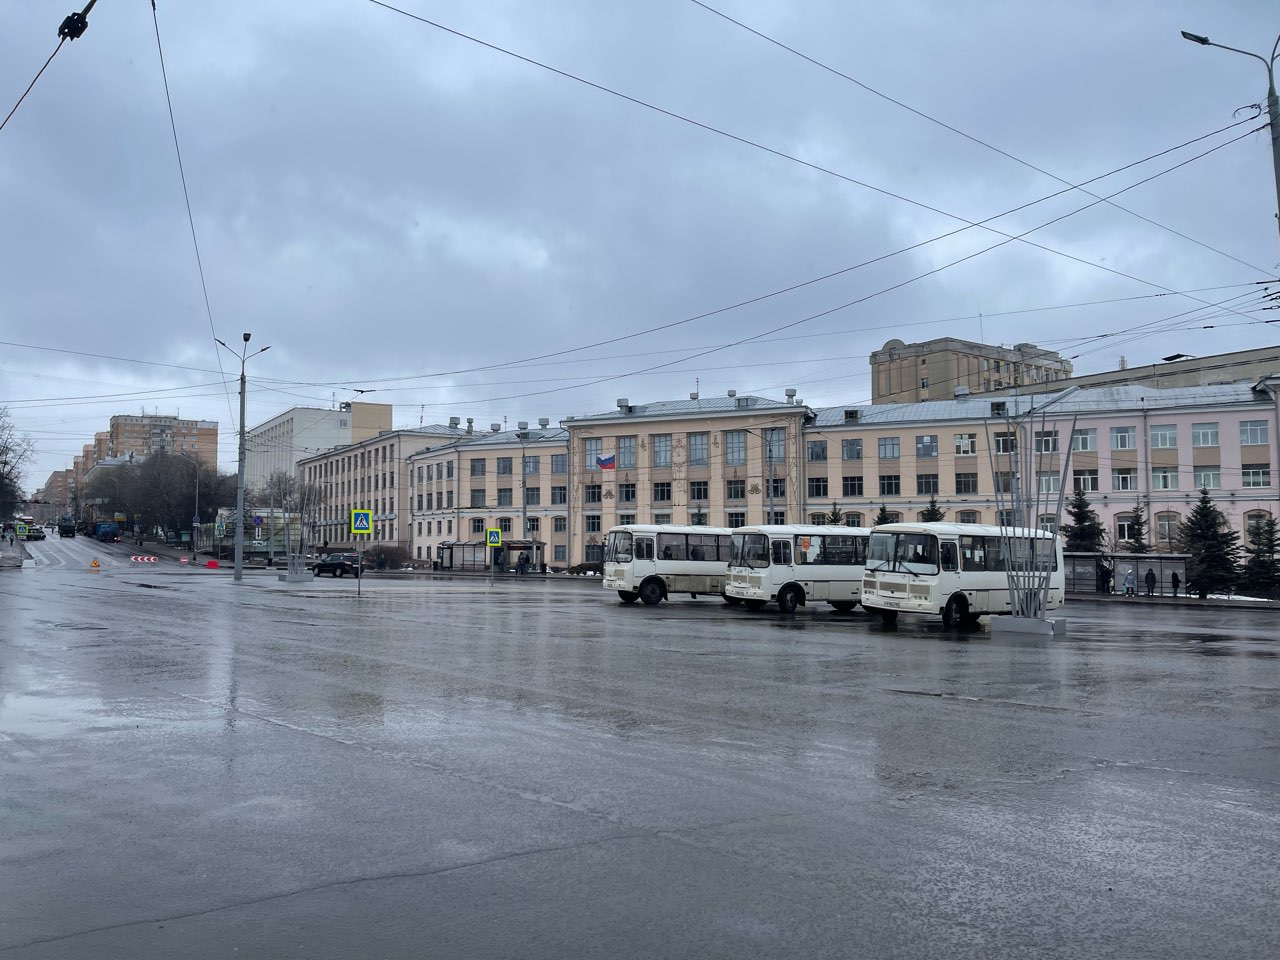 Автобусы Т-40 будут ходить в Нижнем Новгороде до 23:00  - фото 1